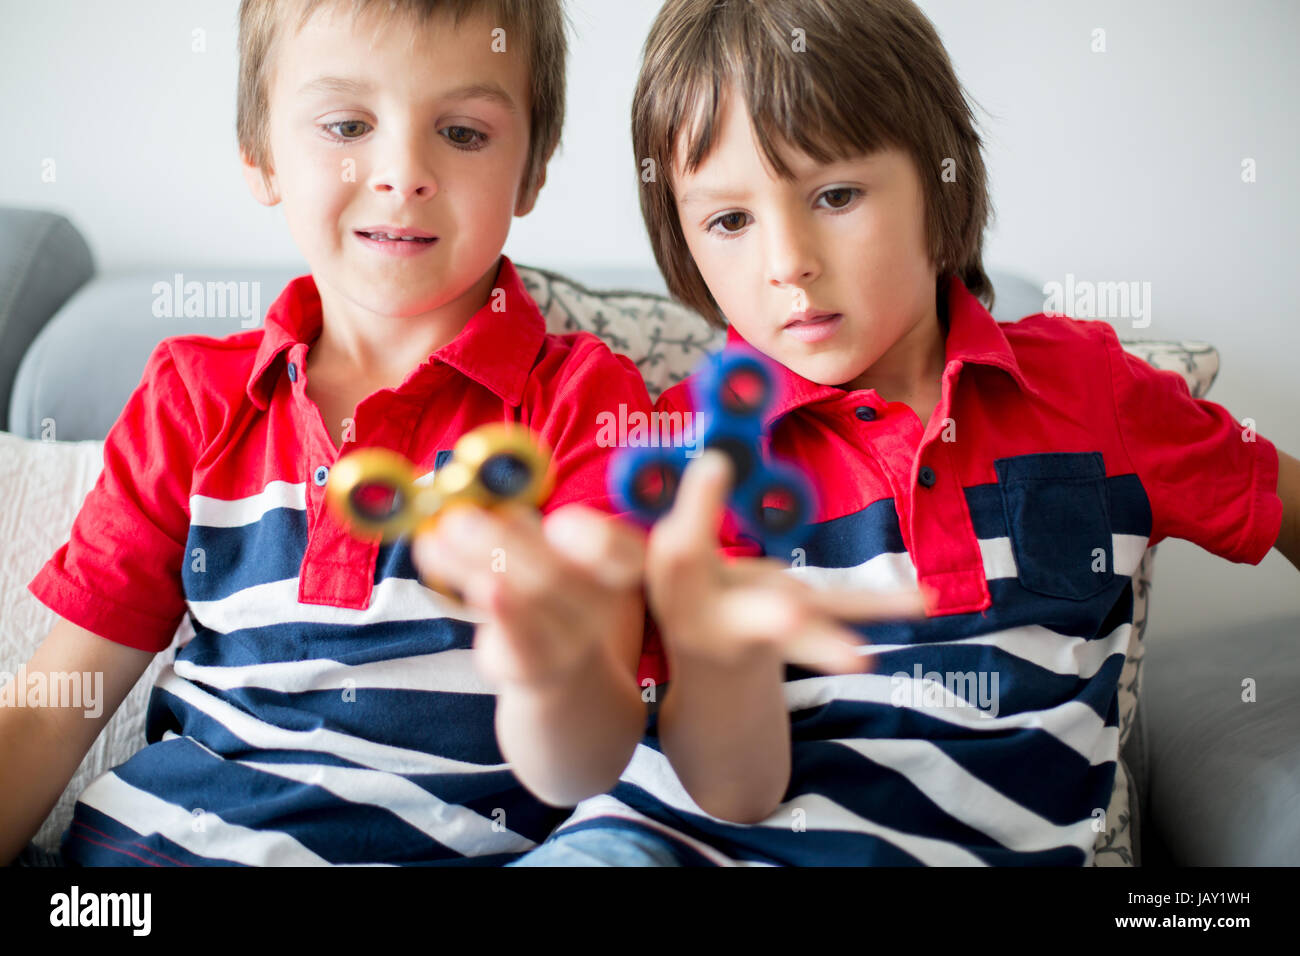 Meine lieben Kinder, junge Brüder spielen mit bunten Fidget Spinner Spielzeug um Stress zu Hause Stockfoto